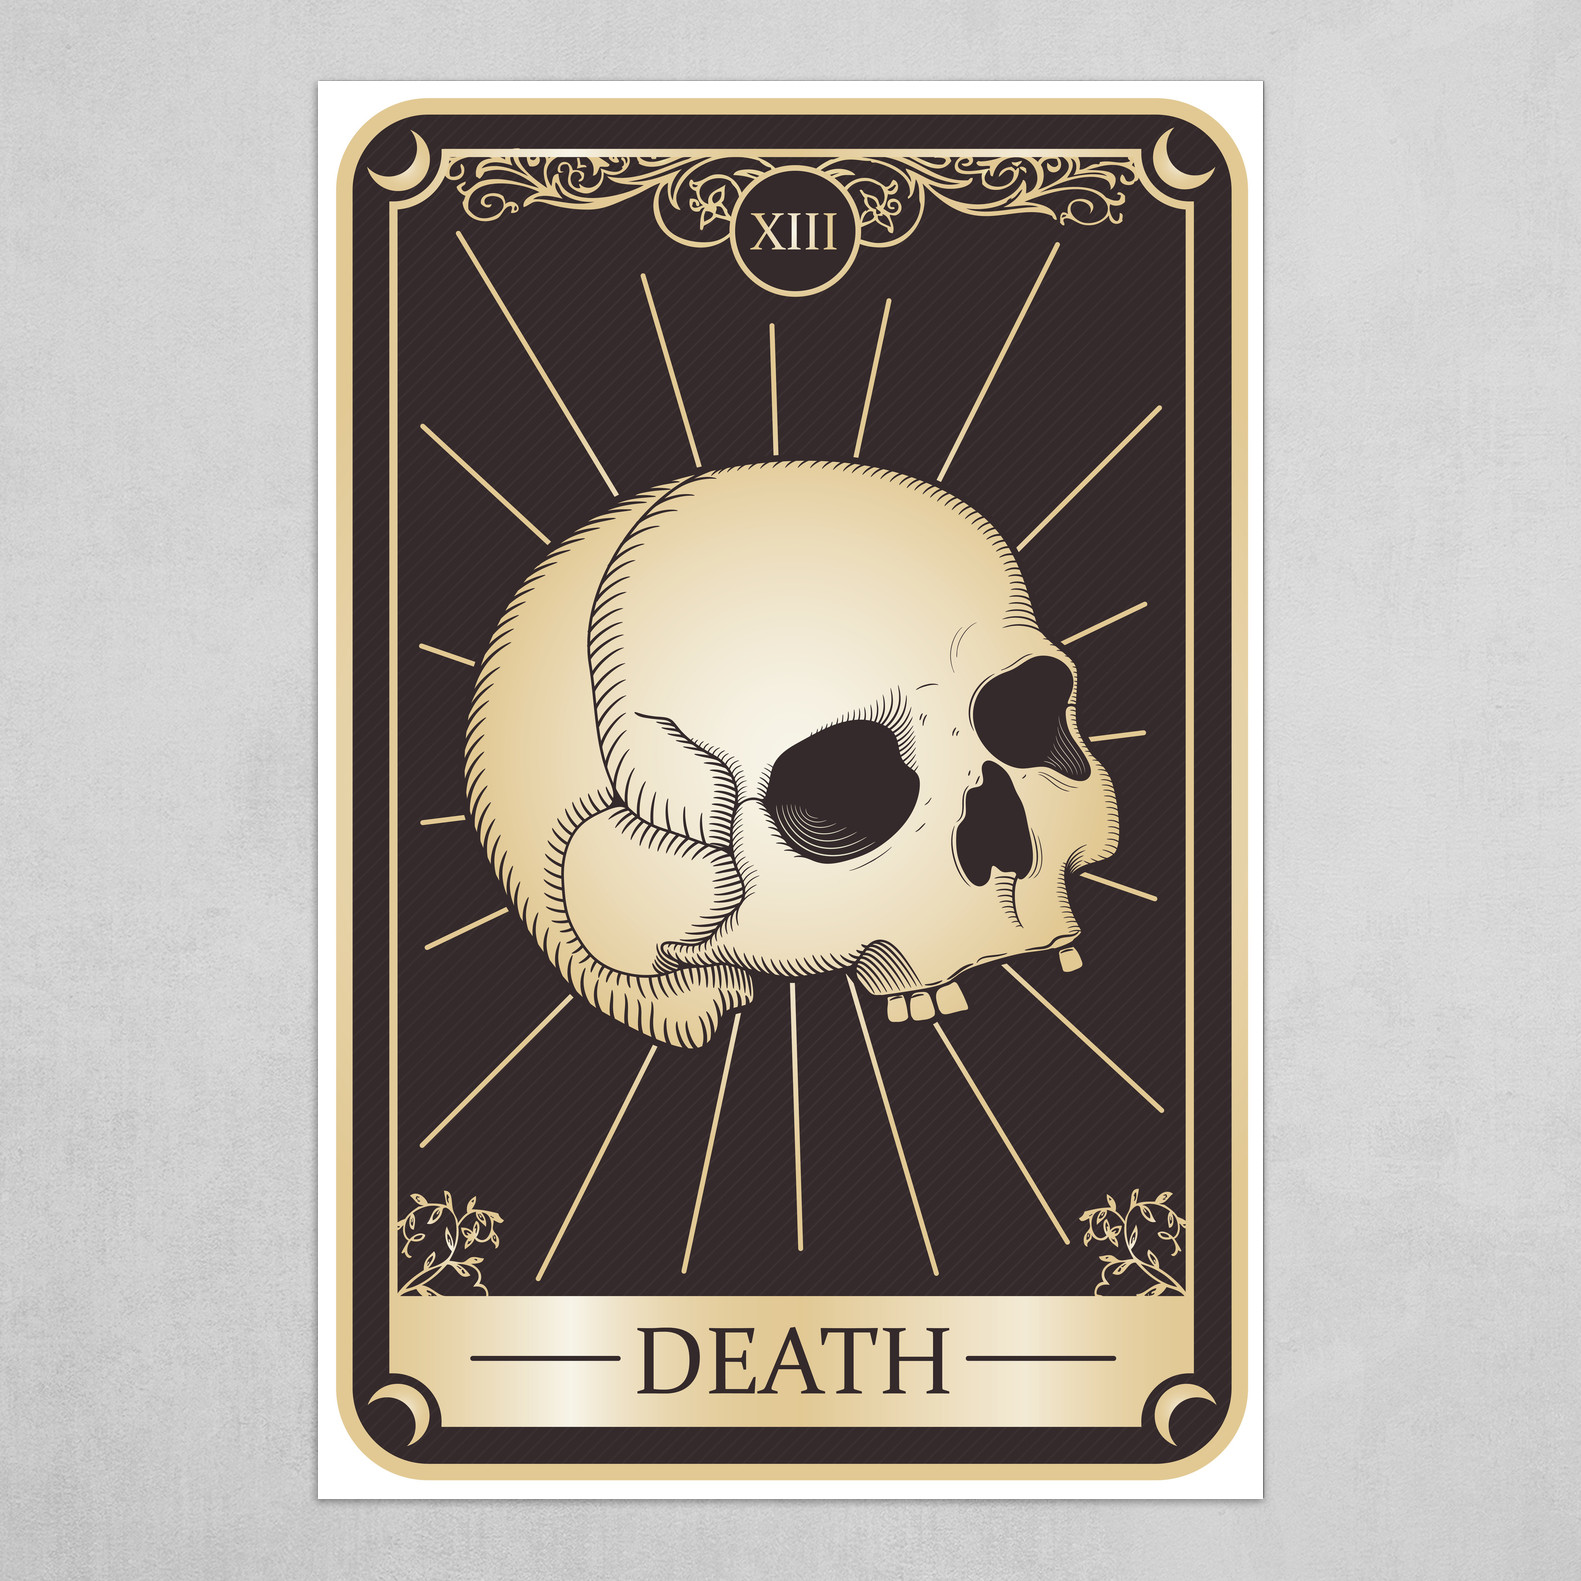 Tarot Card XIII - Death